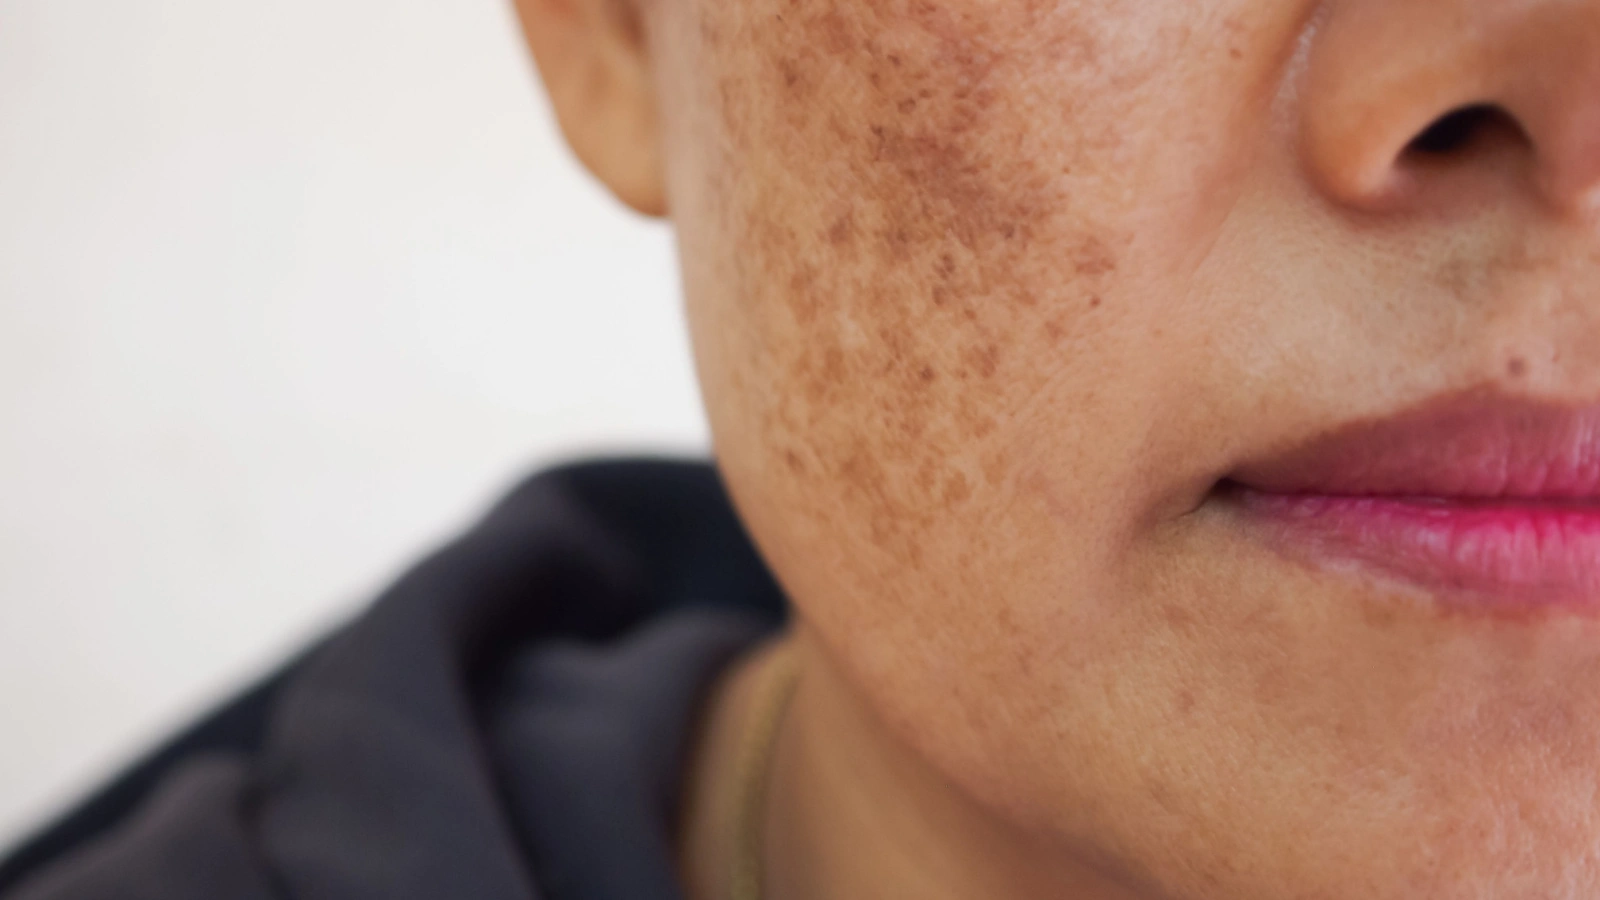 ما أسباب ظهور البقع الداكنة في الوجه؟ وما أنواعها وطرق علاجها والوقاية منها؟